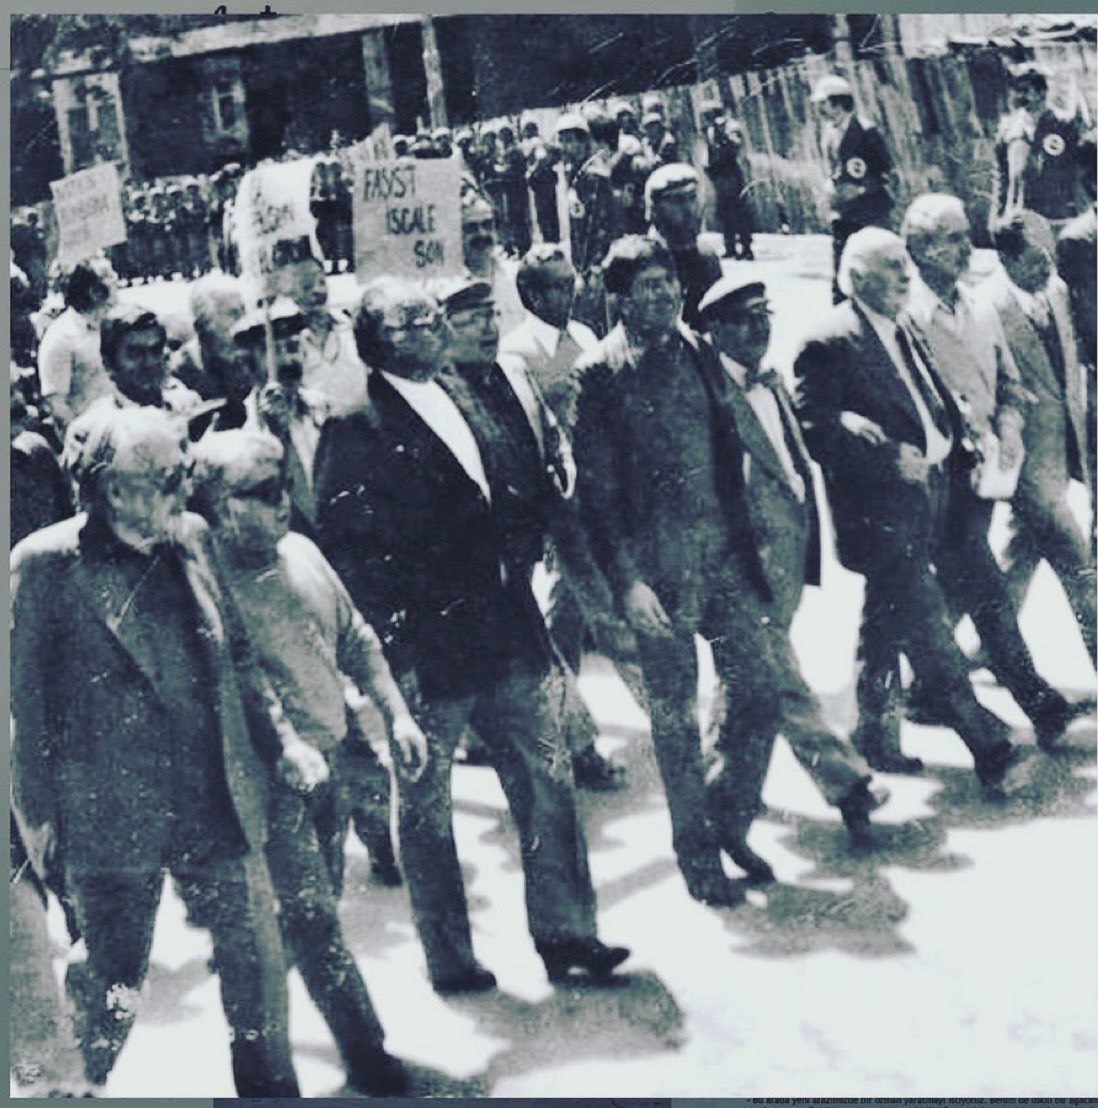 Kanlı 1 Mayıs'tan sonra 1 Mayıs 1978’de Yaşar Kemal, Aziz Nesin ve yazar dostları Gümüşsuyu'ndan Taksim’e yürürken... Fotoğraftakiler sırasıyla Aziz Nesin, Yaşar Kemal, Şükran Kurdakul, Adnan Özyalçıner, Oktay Akbal, Rasih Nuri. #Yaşasın1Mayıs #BijîYekGulan